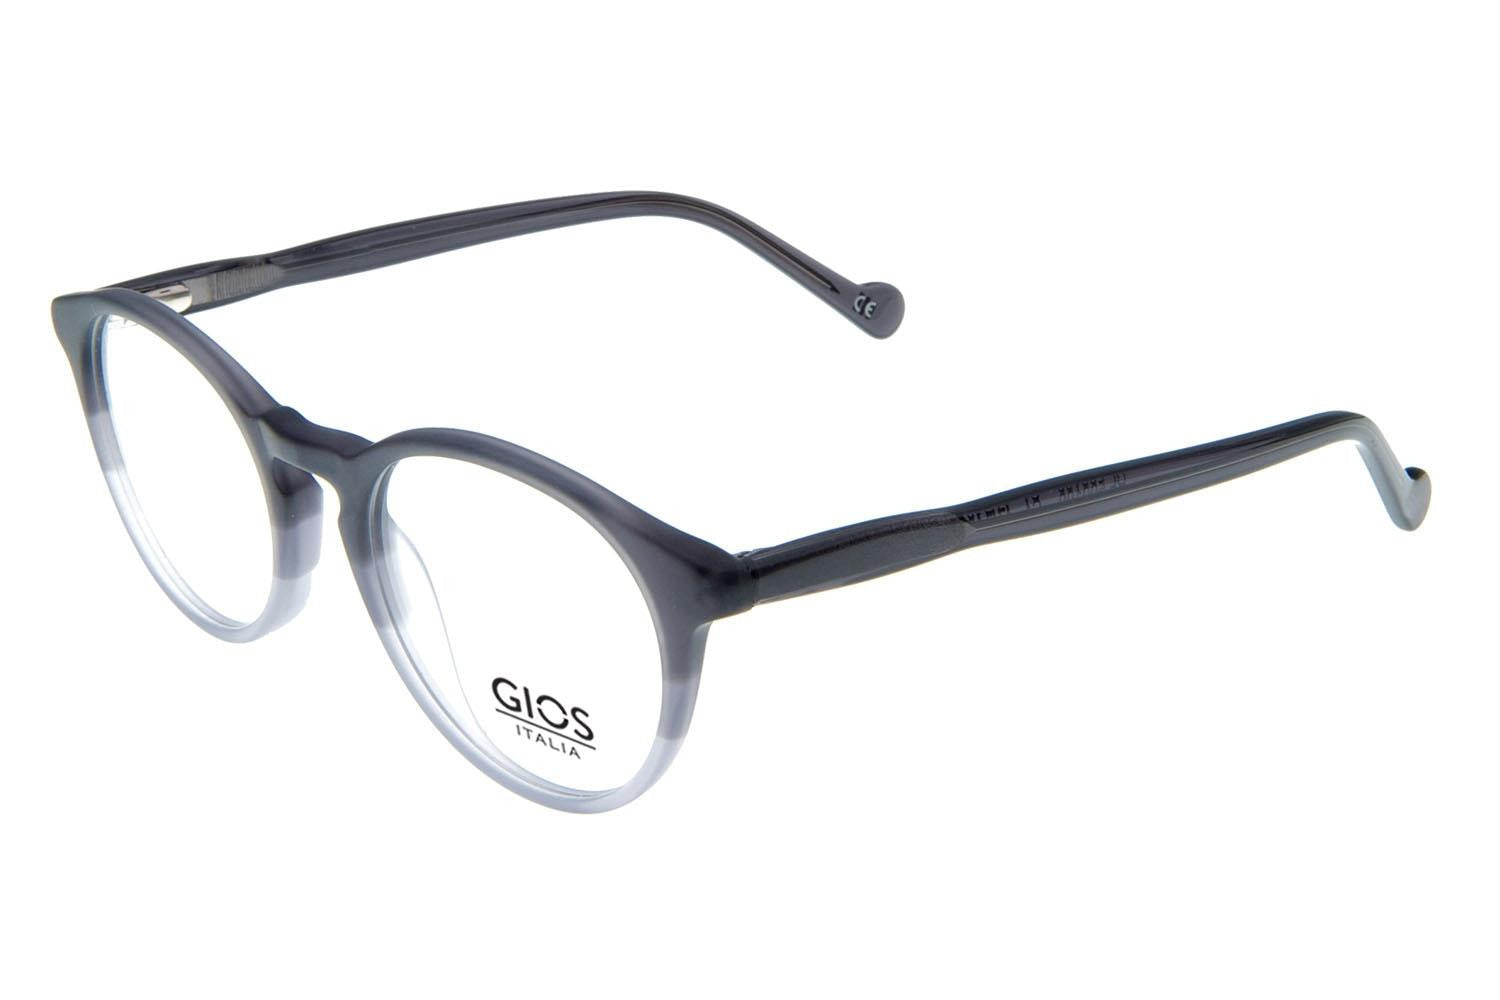 GIOS ITALIA Eyeglasses GRF500109